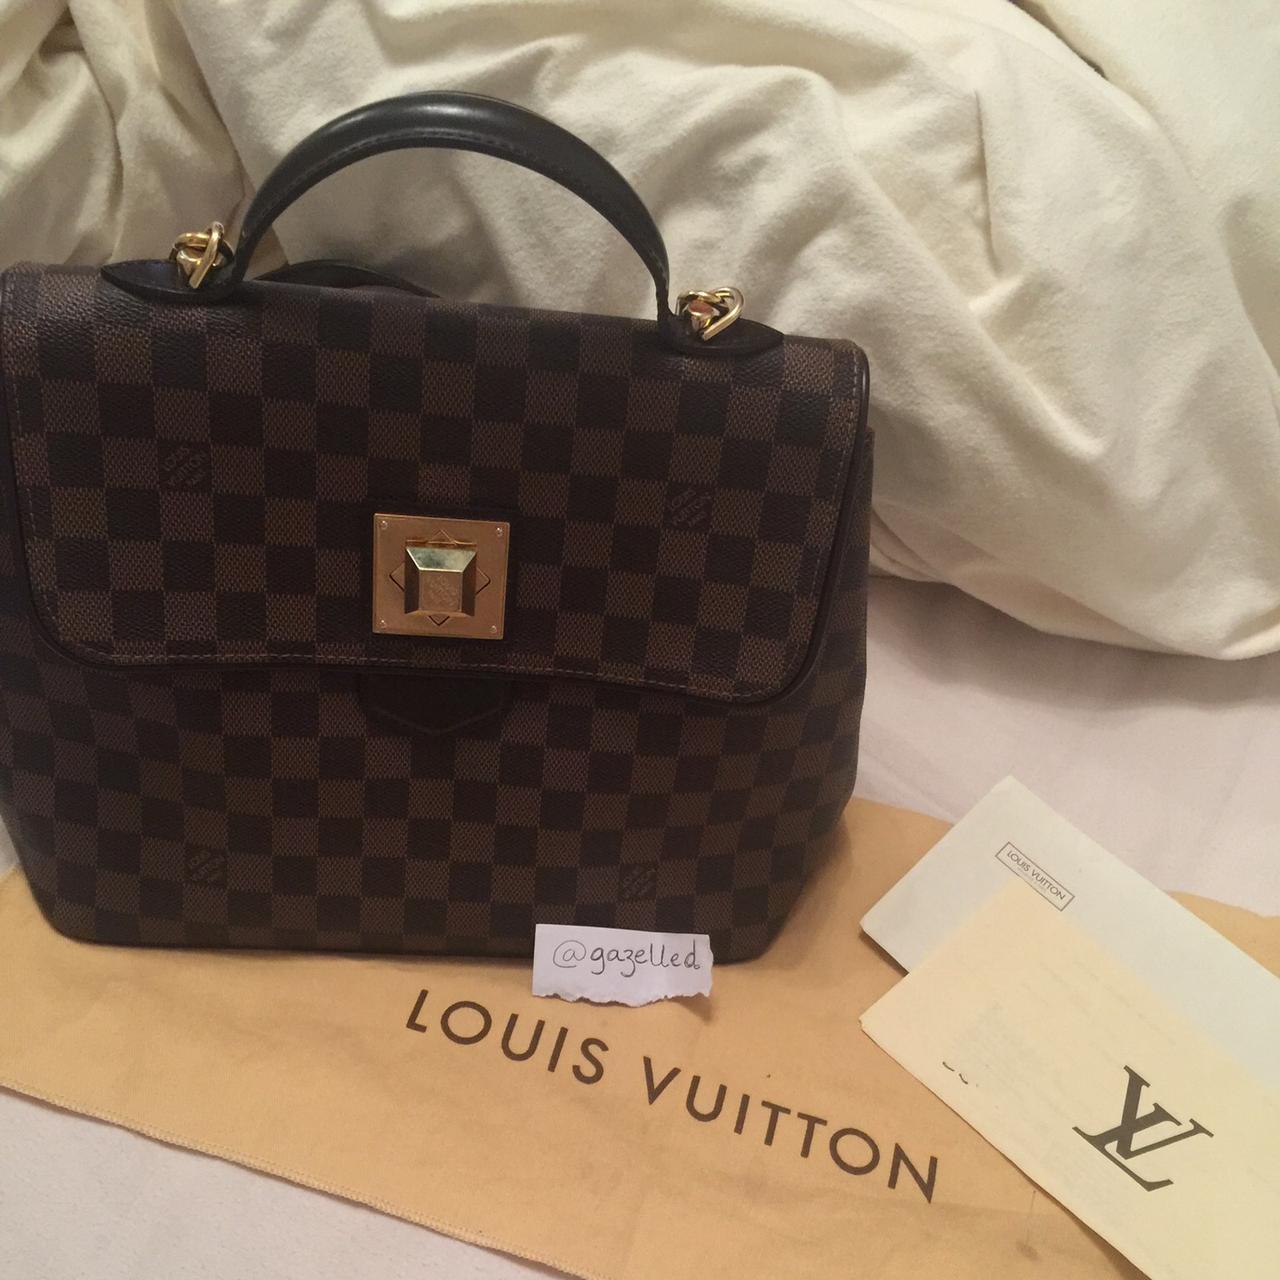 100% authentic Louis Vuitton Shopping Bag. - Depop